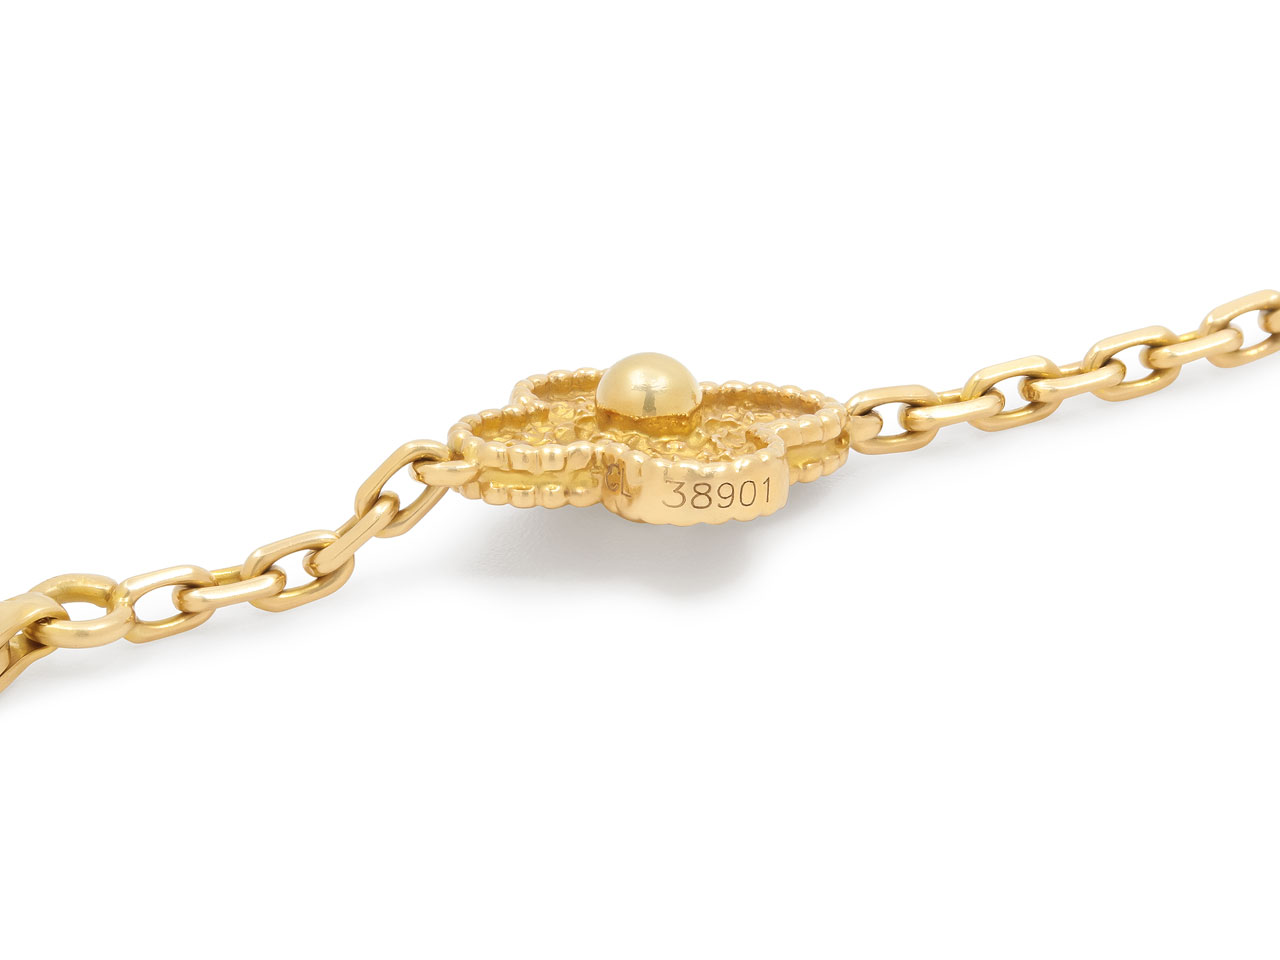 Van Cleef & Arpels 'Vintage Alhambra' Bracelet, 5 Motifs, in 18K Gold